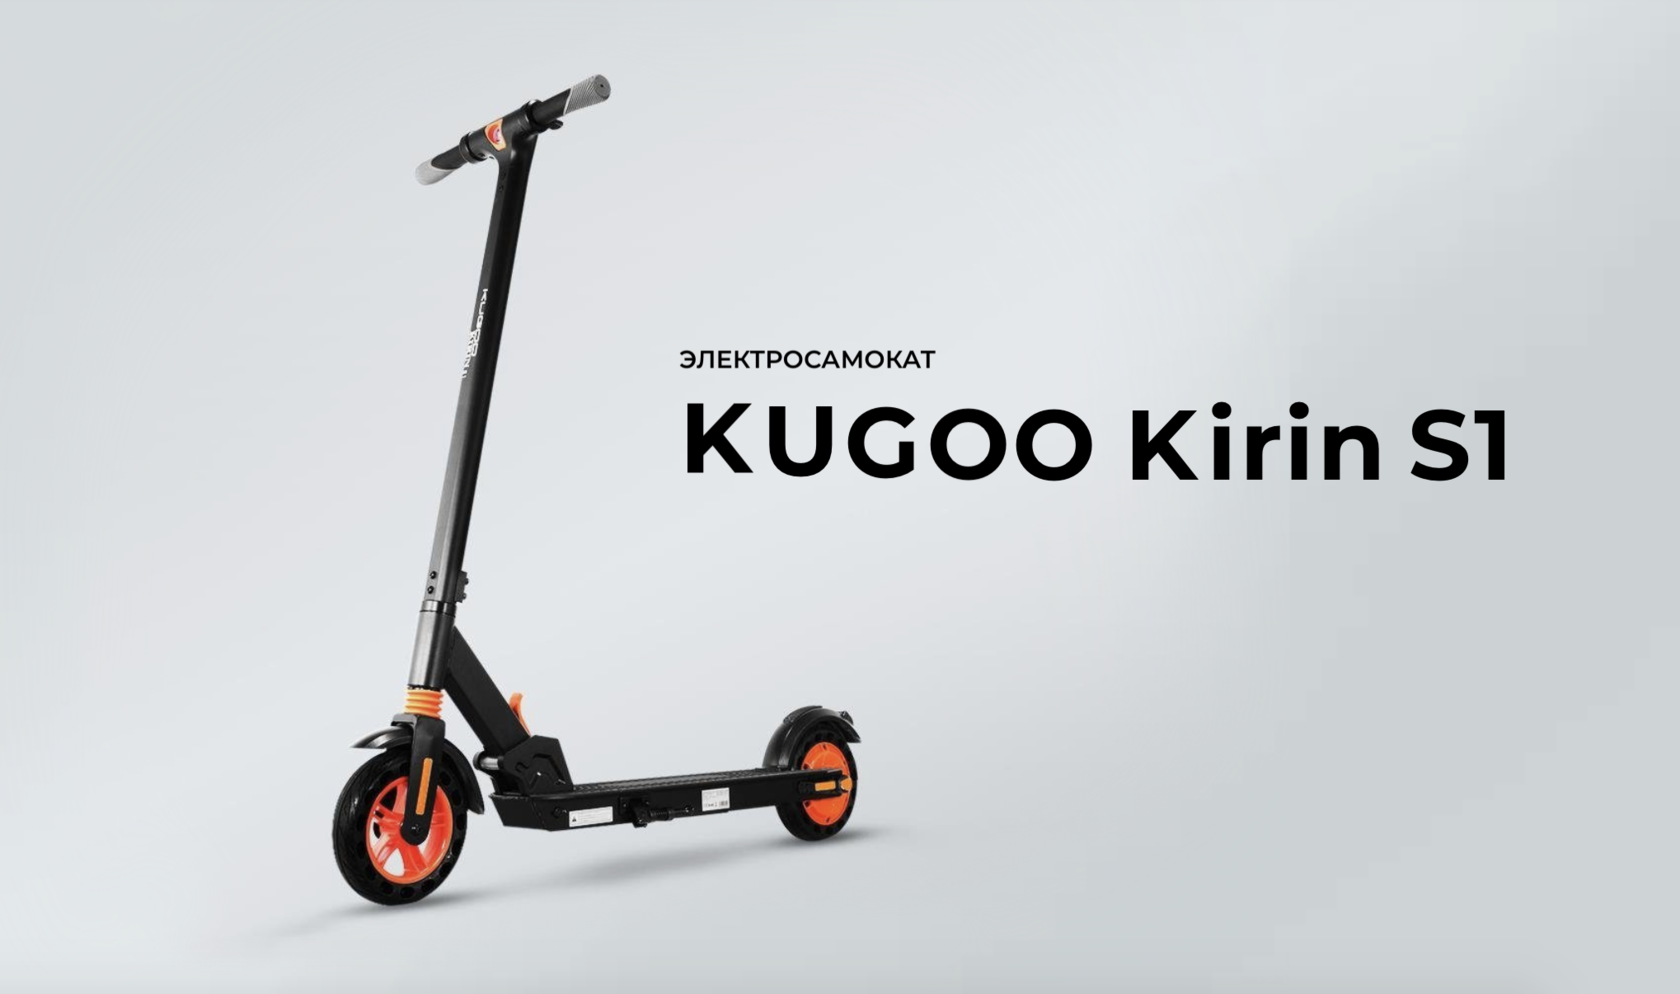 Самокат Kugoo s1. Электросамокат Kugoo Kirin s1 Pro. Kugoo s1 Plus. Электросамокат Kugoo Kirin s2 Pro.